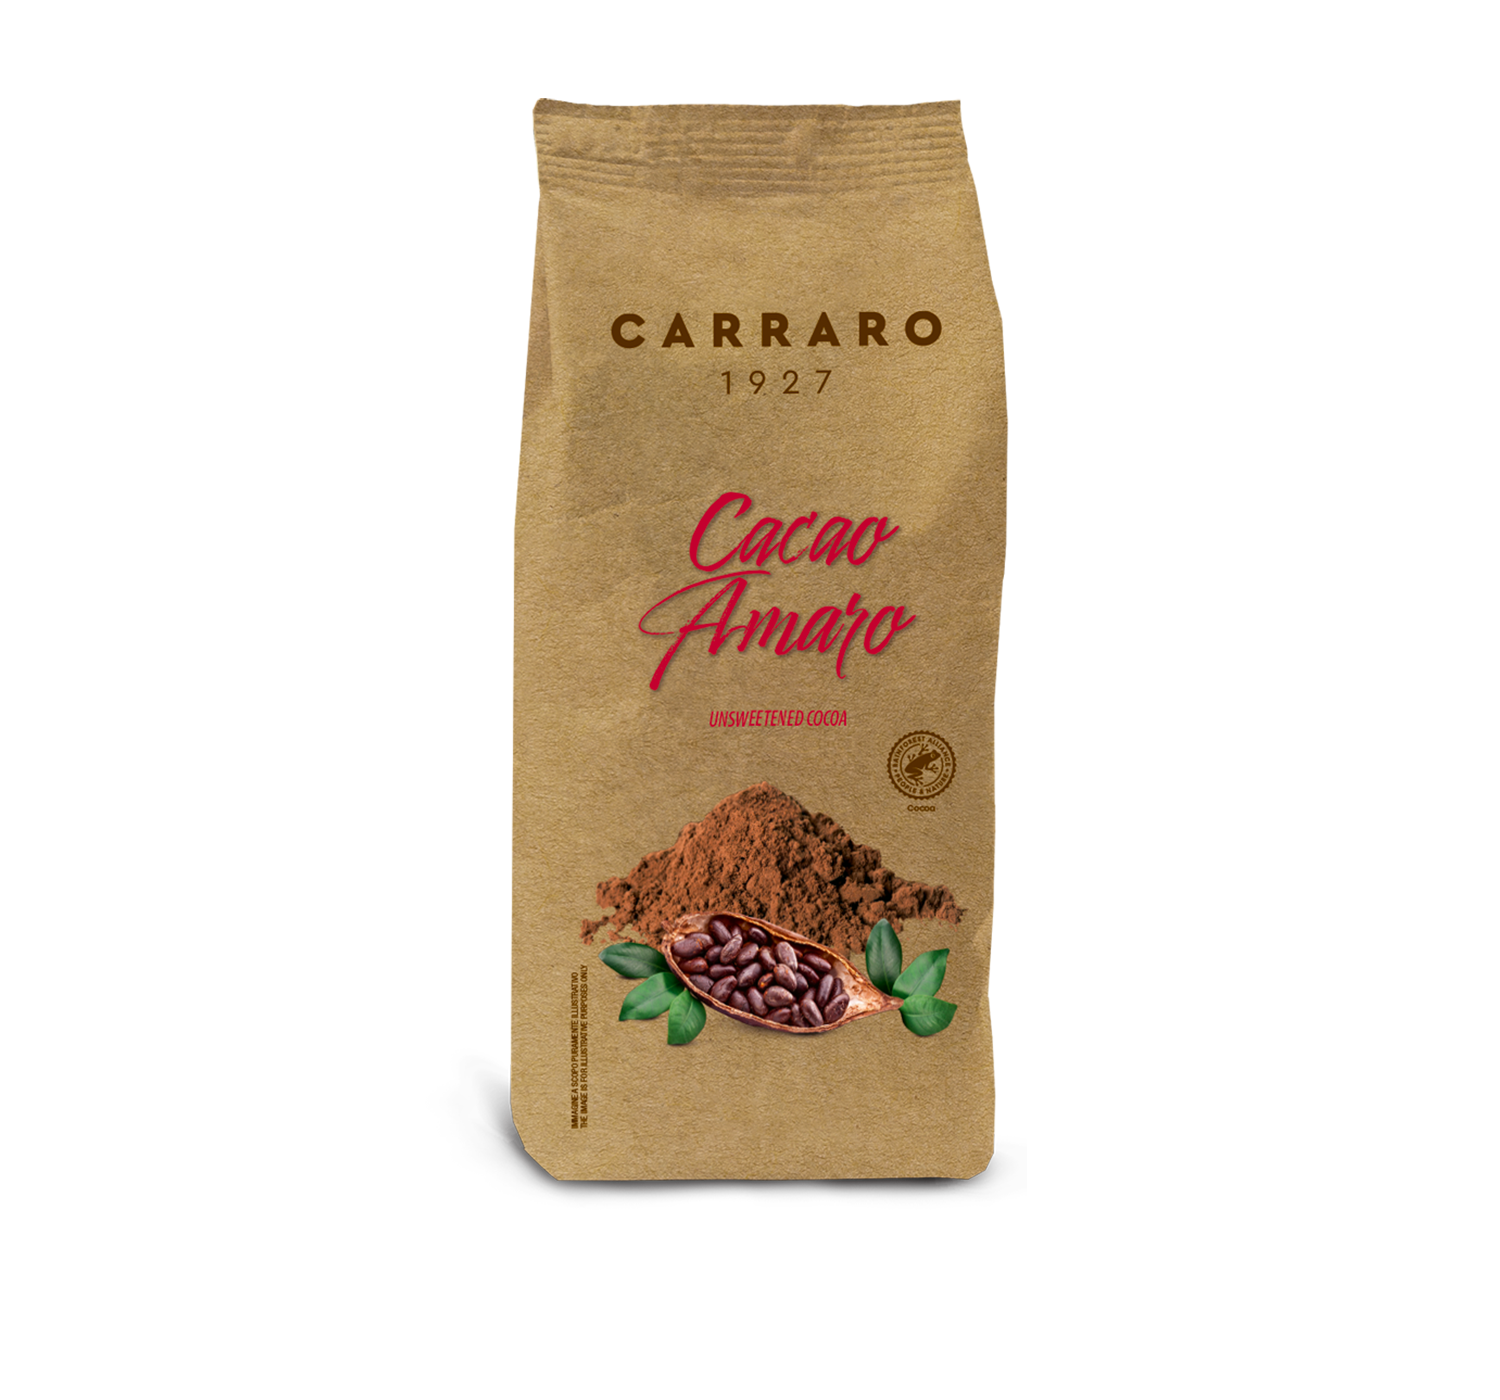 Casa - Cacao amaro – 500 g - Shop online Caffè Carraro